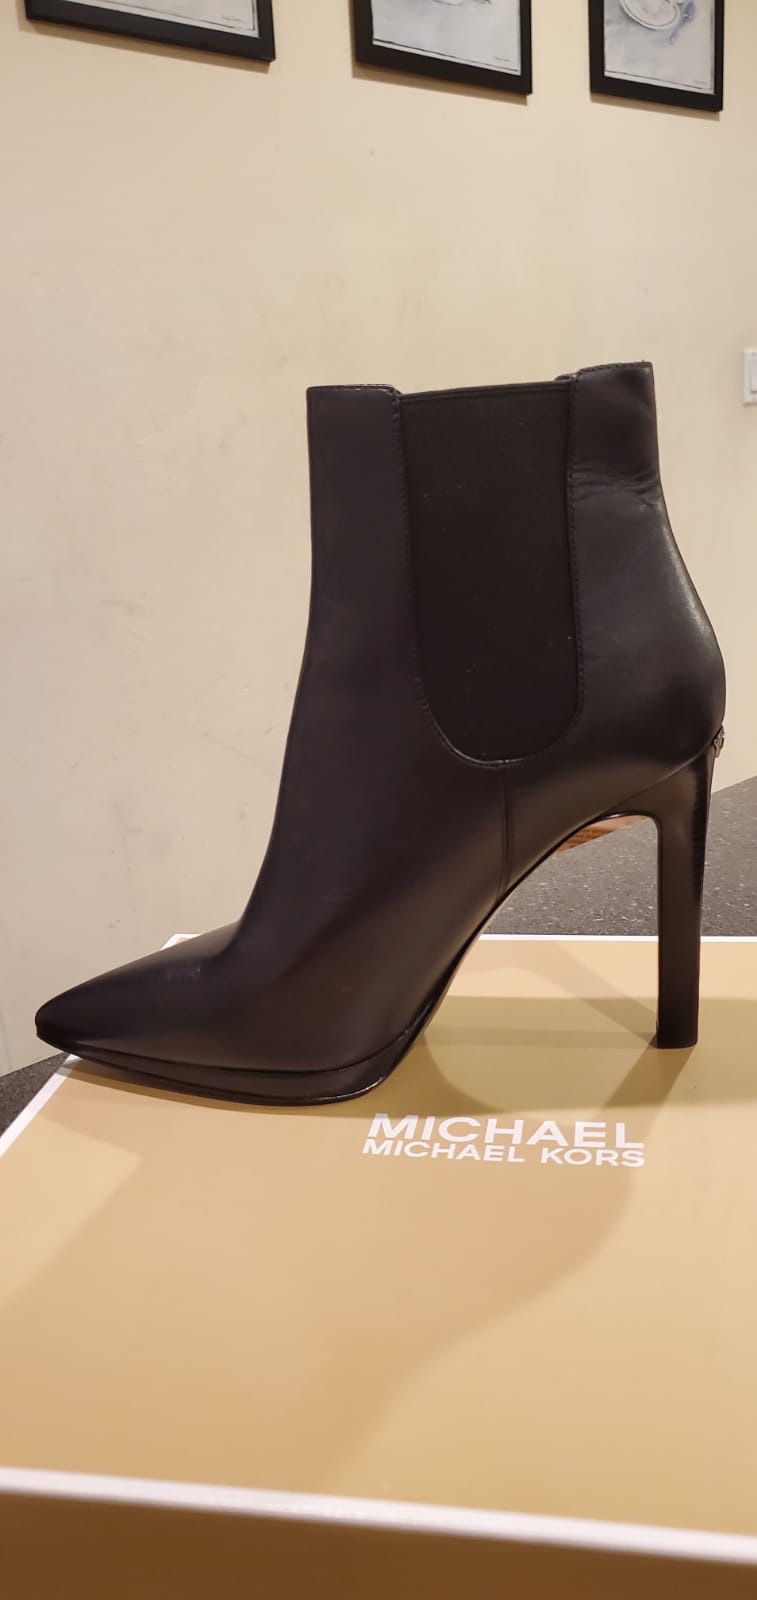 MICHAEL KORS Authentic boots size 9